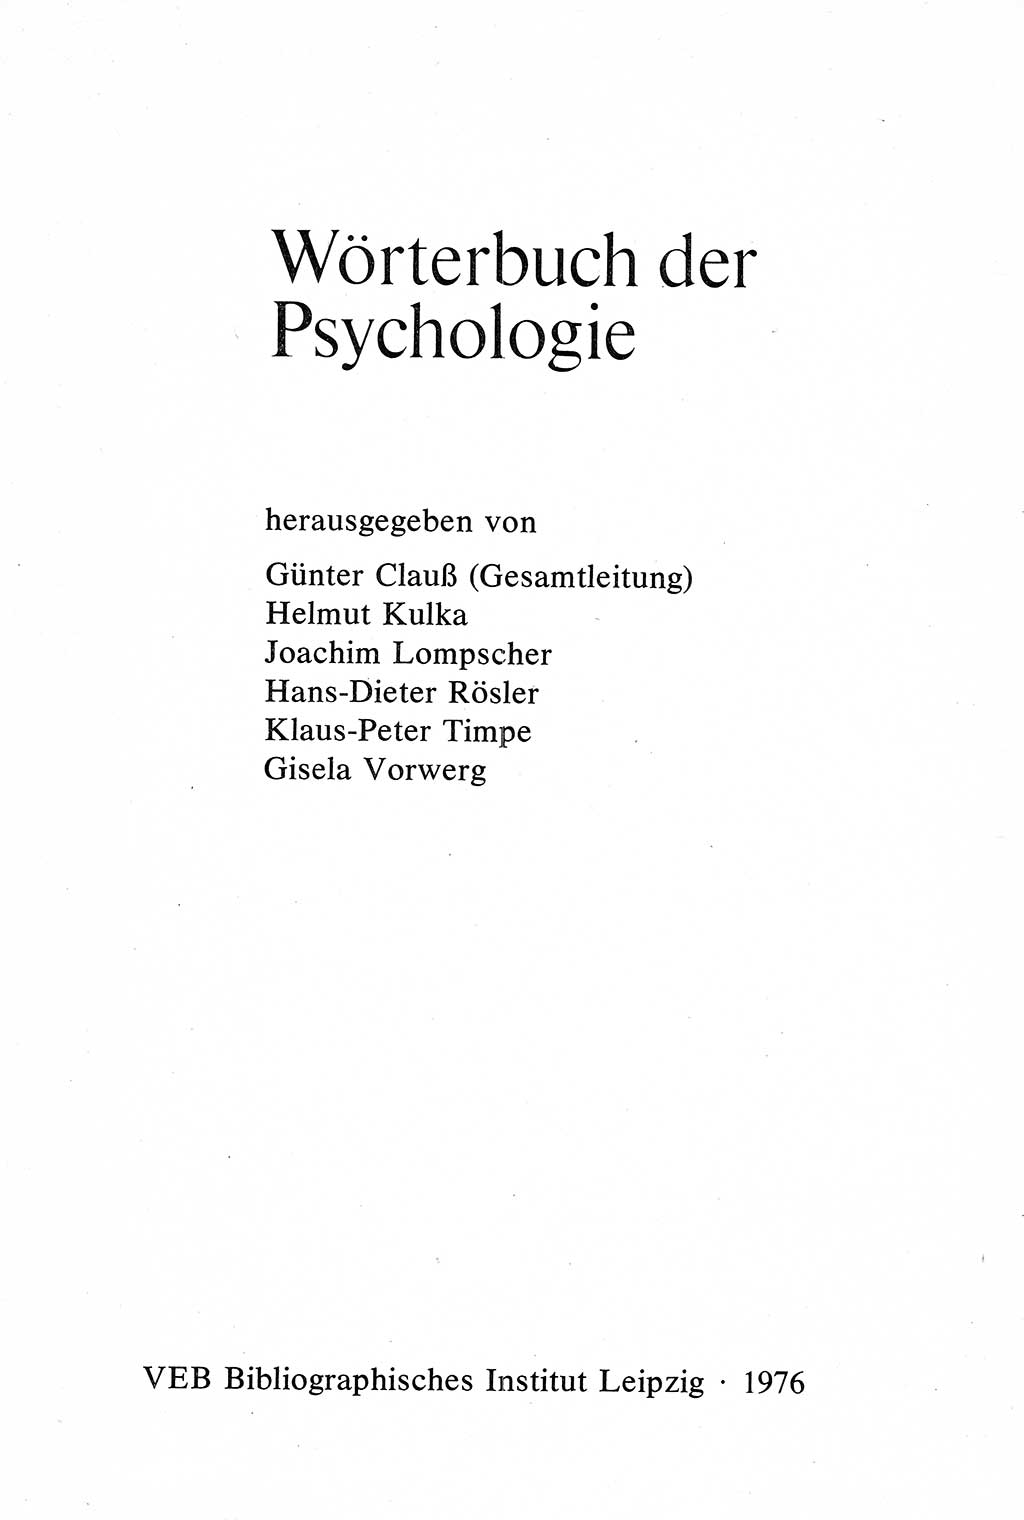 Wörterbuch der Psychologie [Deutsche Demokratische Republik (DDR)] 1976, Seite 3 (Wb. Psych. DDR 1976, S. 3)